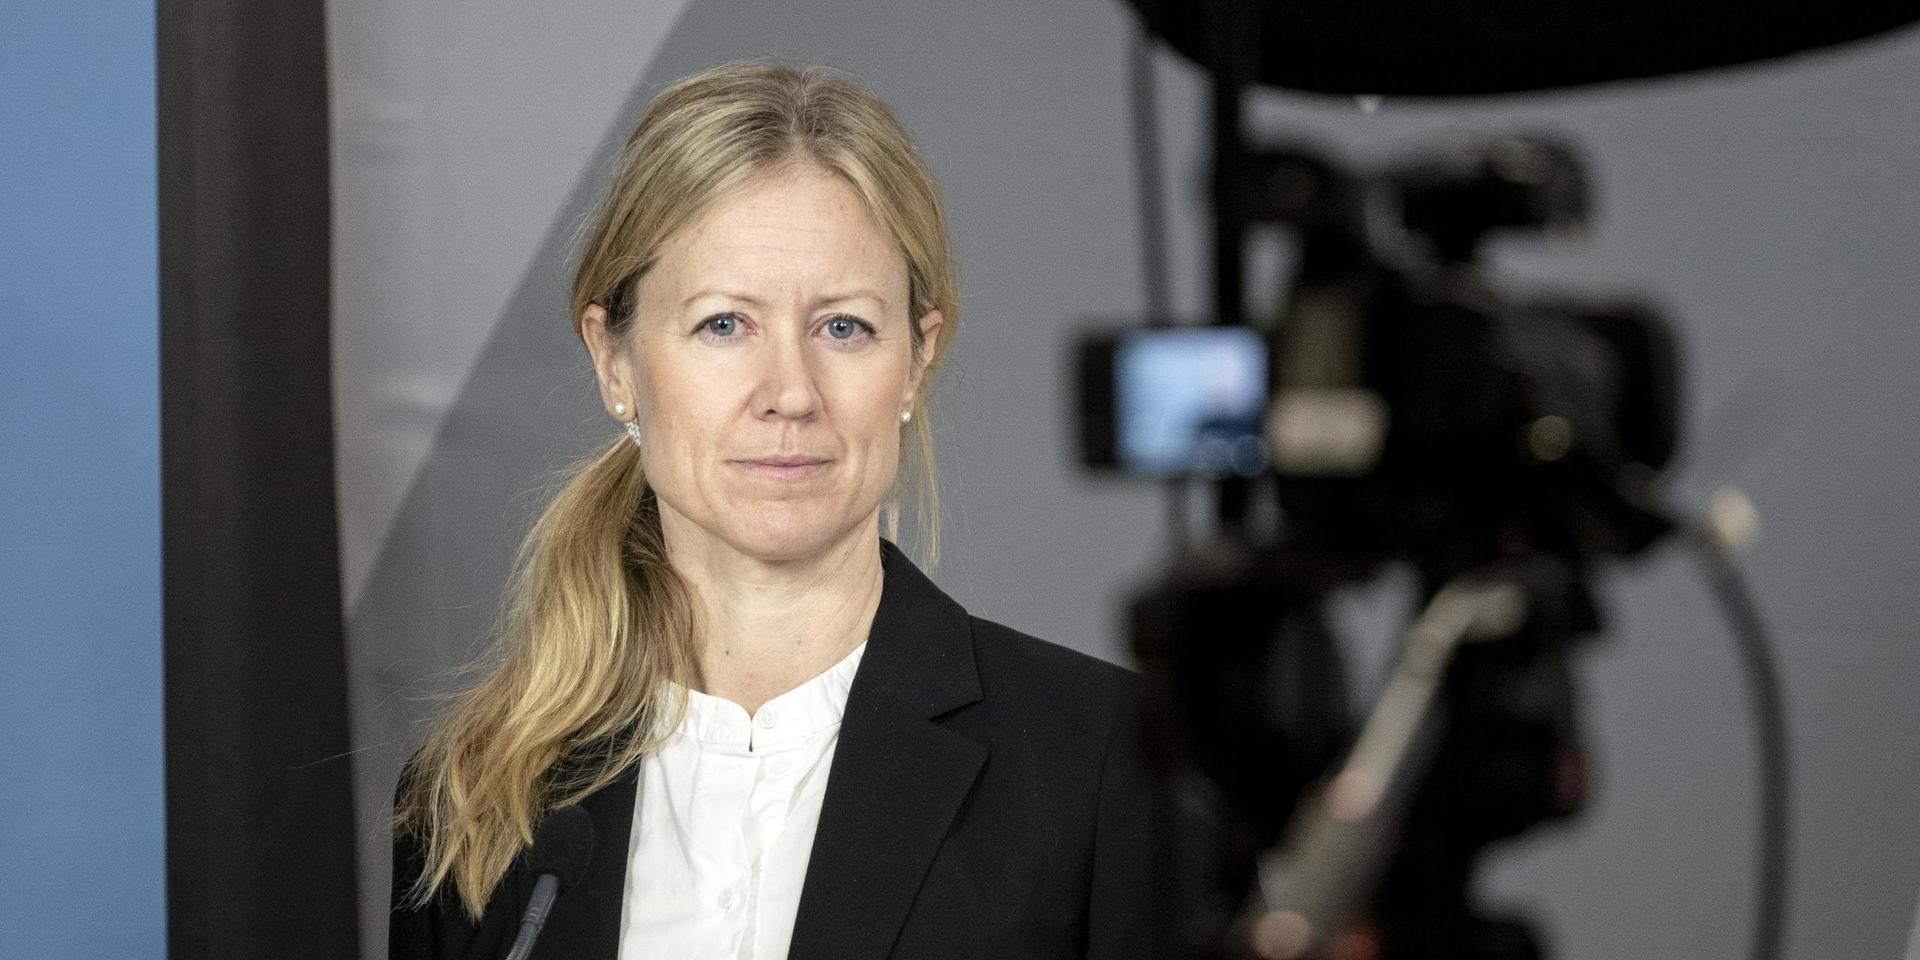 Kristine Rygge är vaccinationssamordnare i Västra Götalandsregionen. ”Vi kommer ha stenkoll”, säger hon till GP dagen efter avslöjandet. 